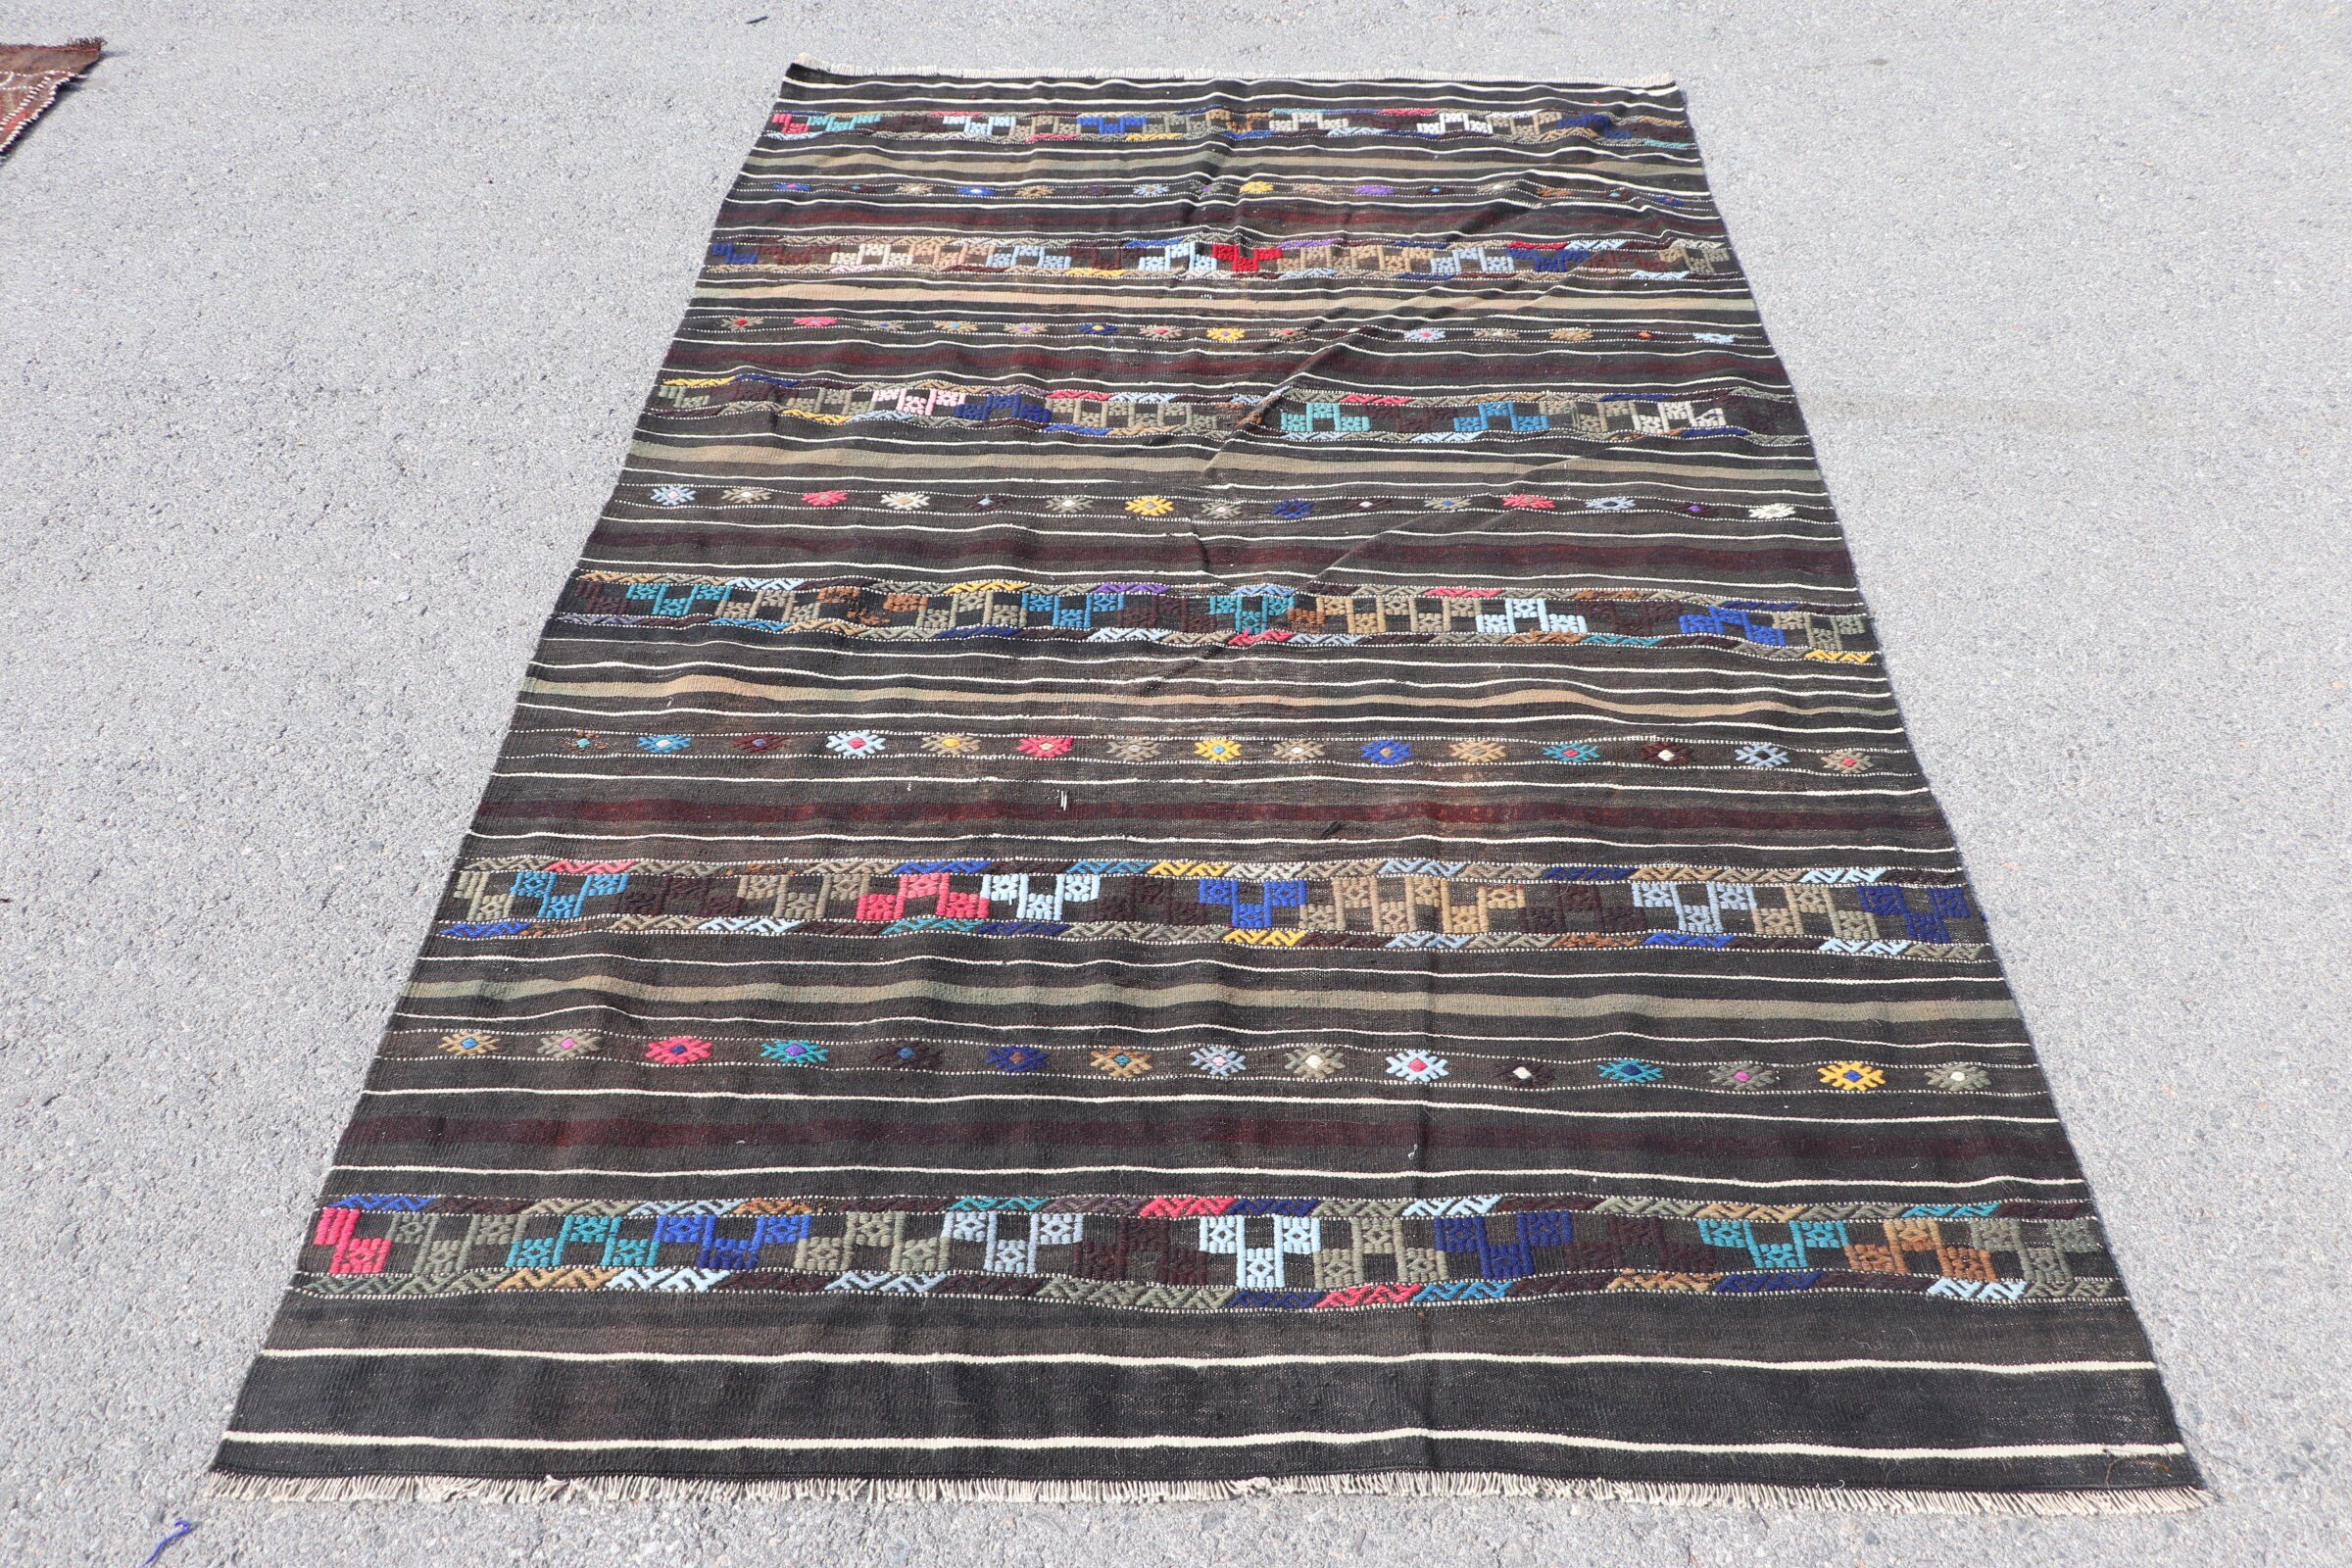 Turkish Rug, Cool Rug, Moroccan Rug, Bedroom Rug, Vintage Rugs, 4.7x7.6 ft Area Rugs, Kilim, Rugs for Bedroom, Turkey Rug, Black Wool Rug